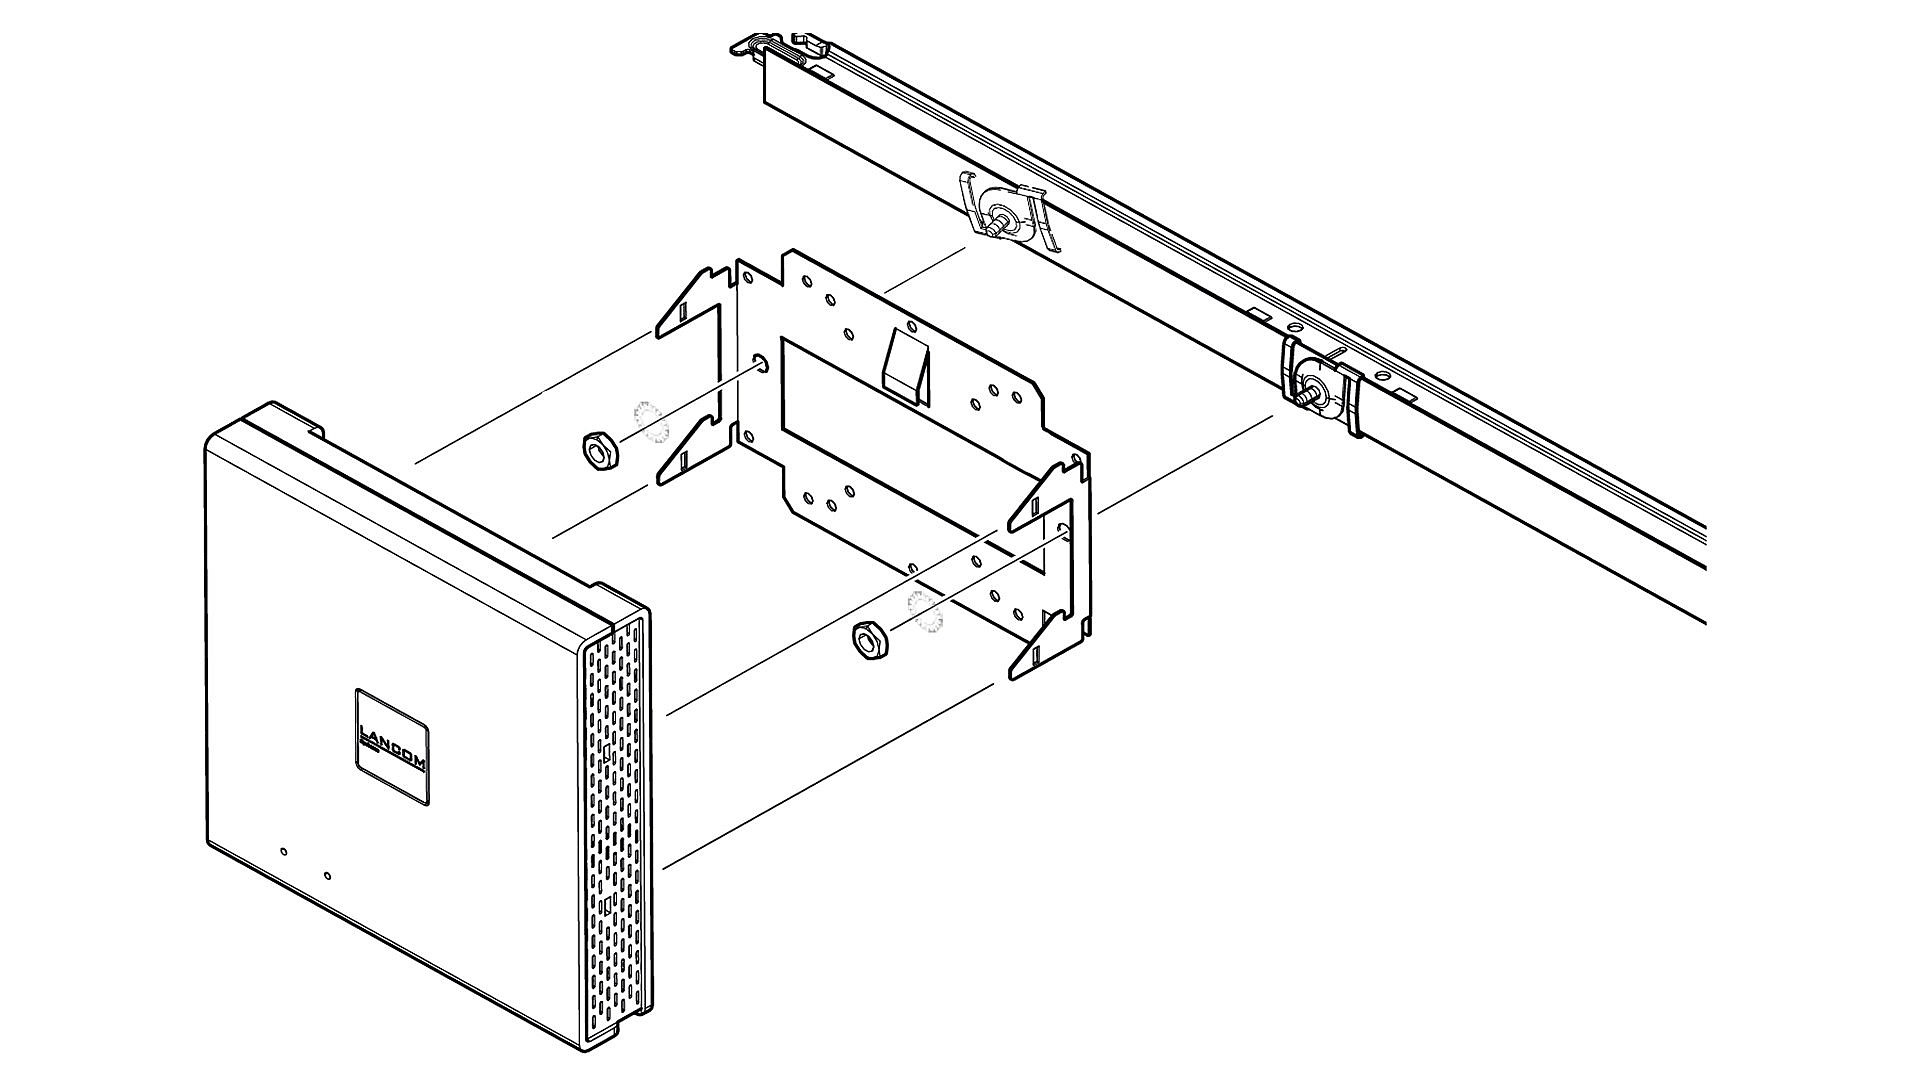 Zeichnung zur Montage eines LANCOM Access Points mit dem T-Bar Mount an einer Trageschiene